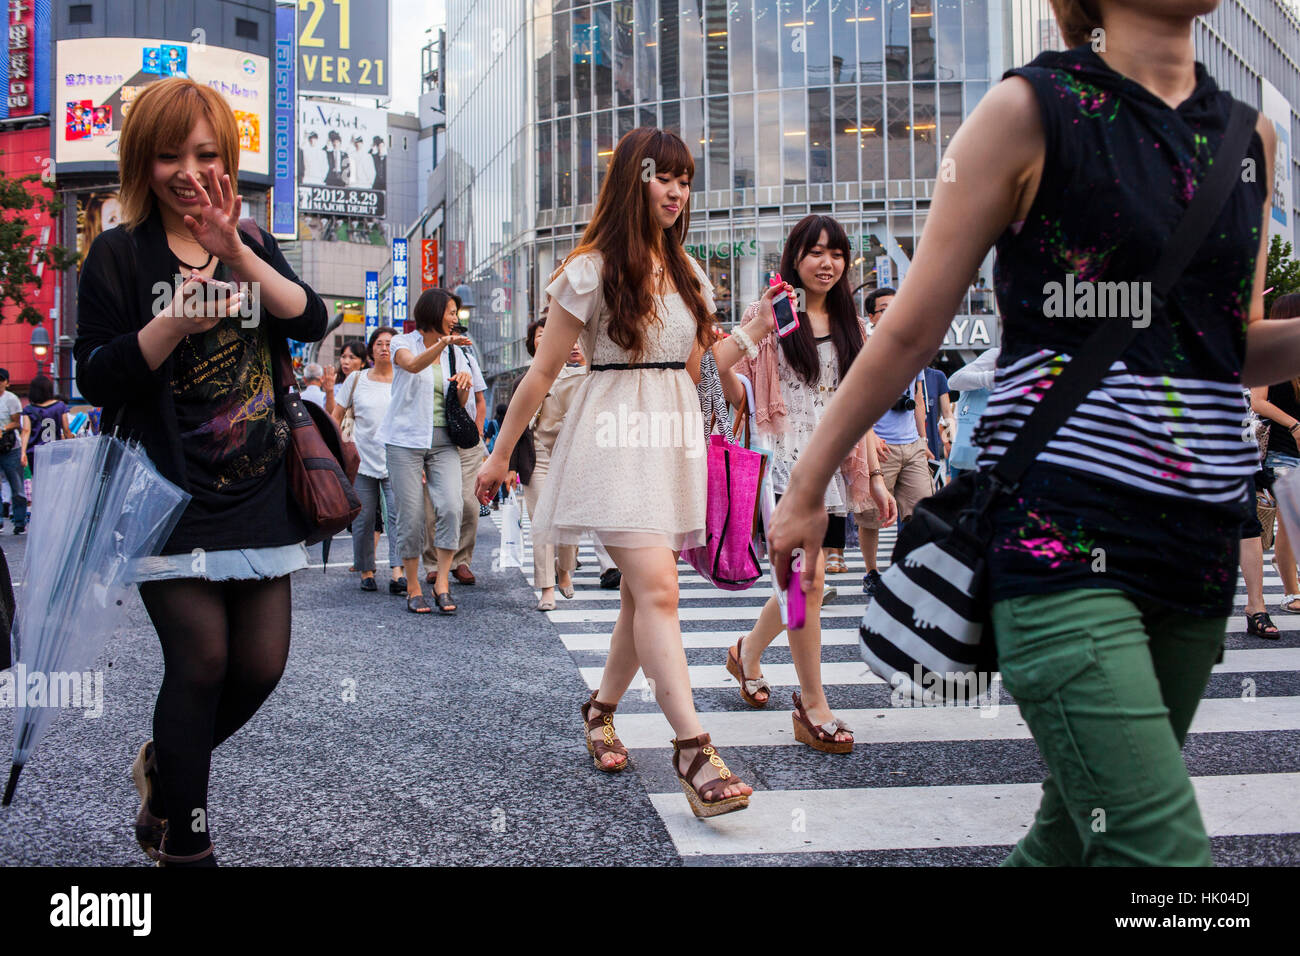 Mädchen, Mädchen, Frau, Frauen, Junge, Jugend, jüngeren, Publikum, überfüllt, Rush Hour, Überbevölkerung, Zebrastreifen, Hachiko Square, Shibuya. Tokyo City, Japan, Asien Stockfoto